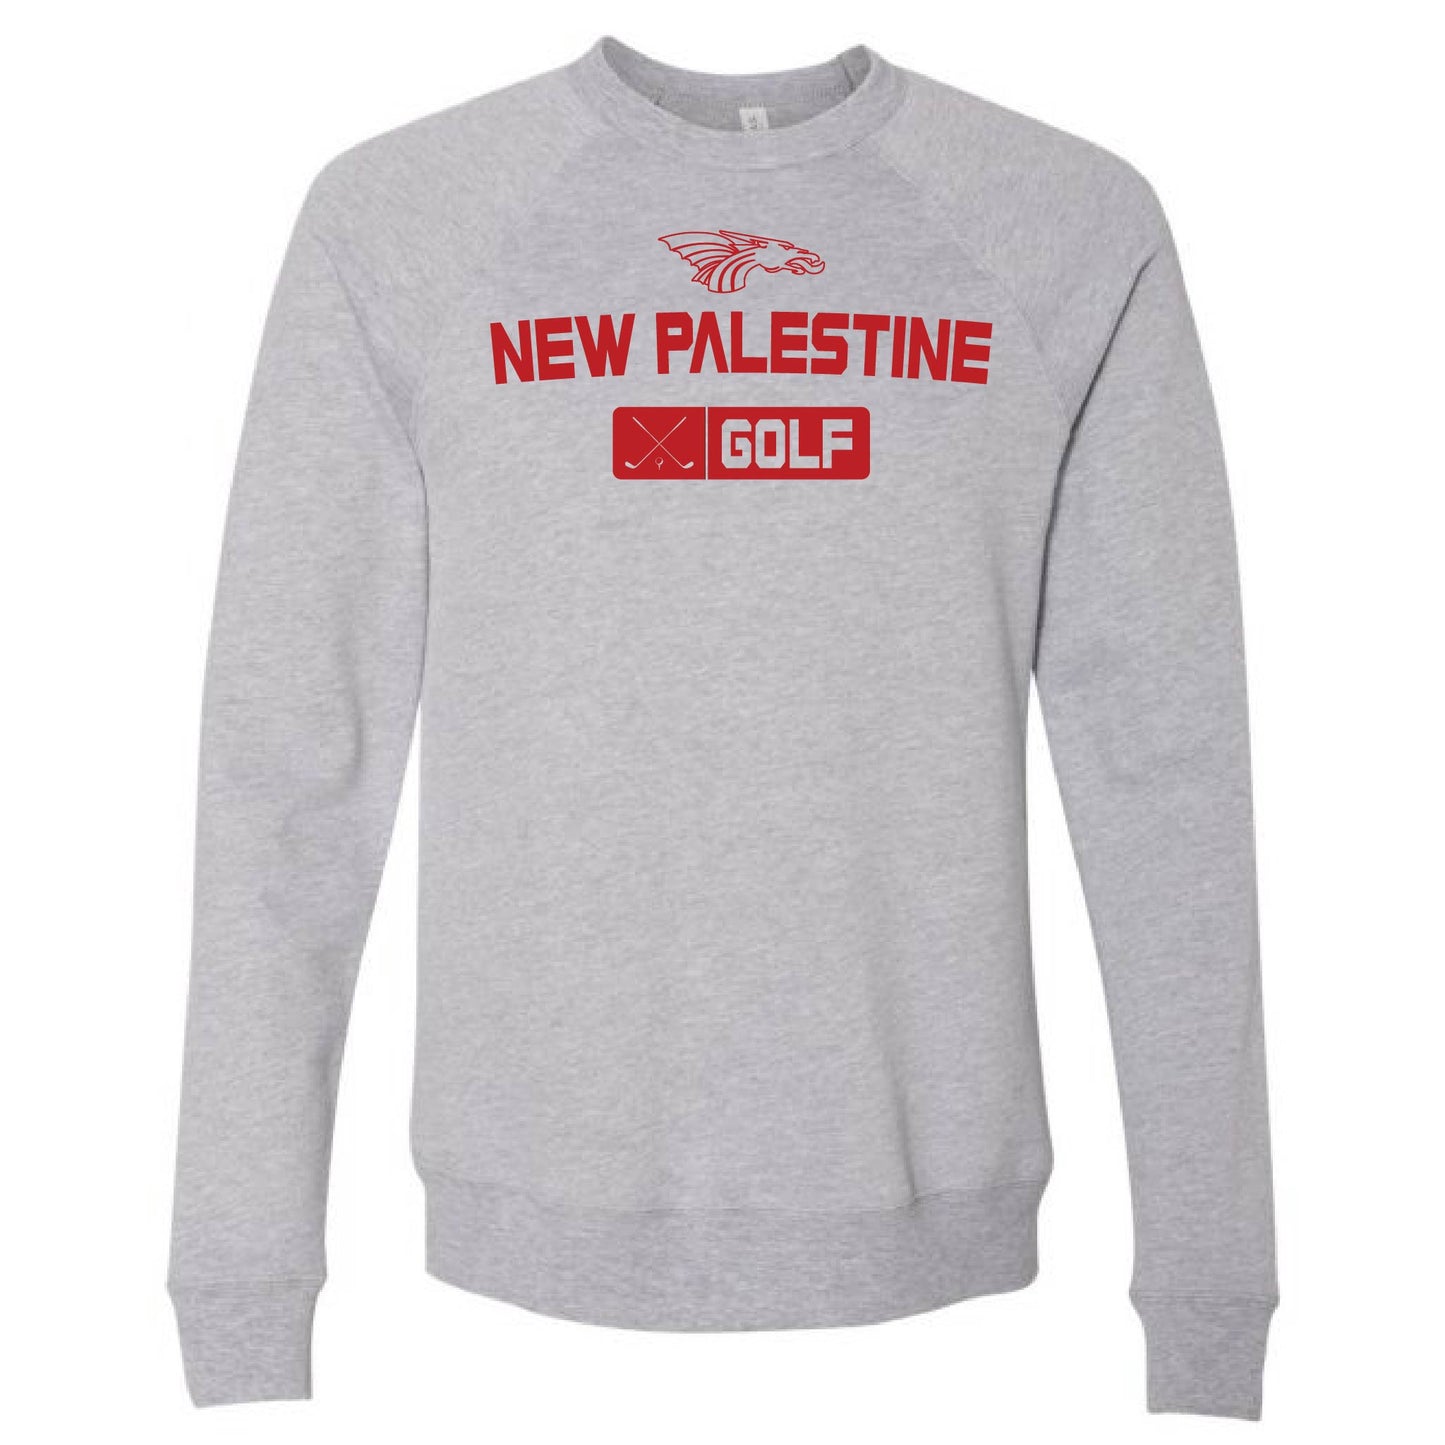 Unisex Sweatshirt - New Palestine Golf